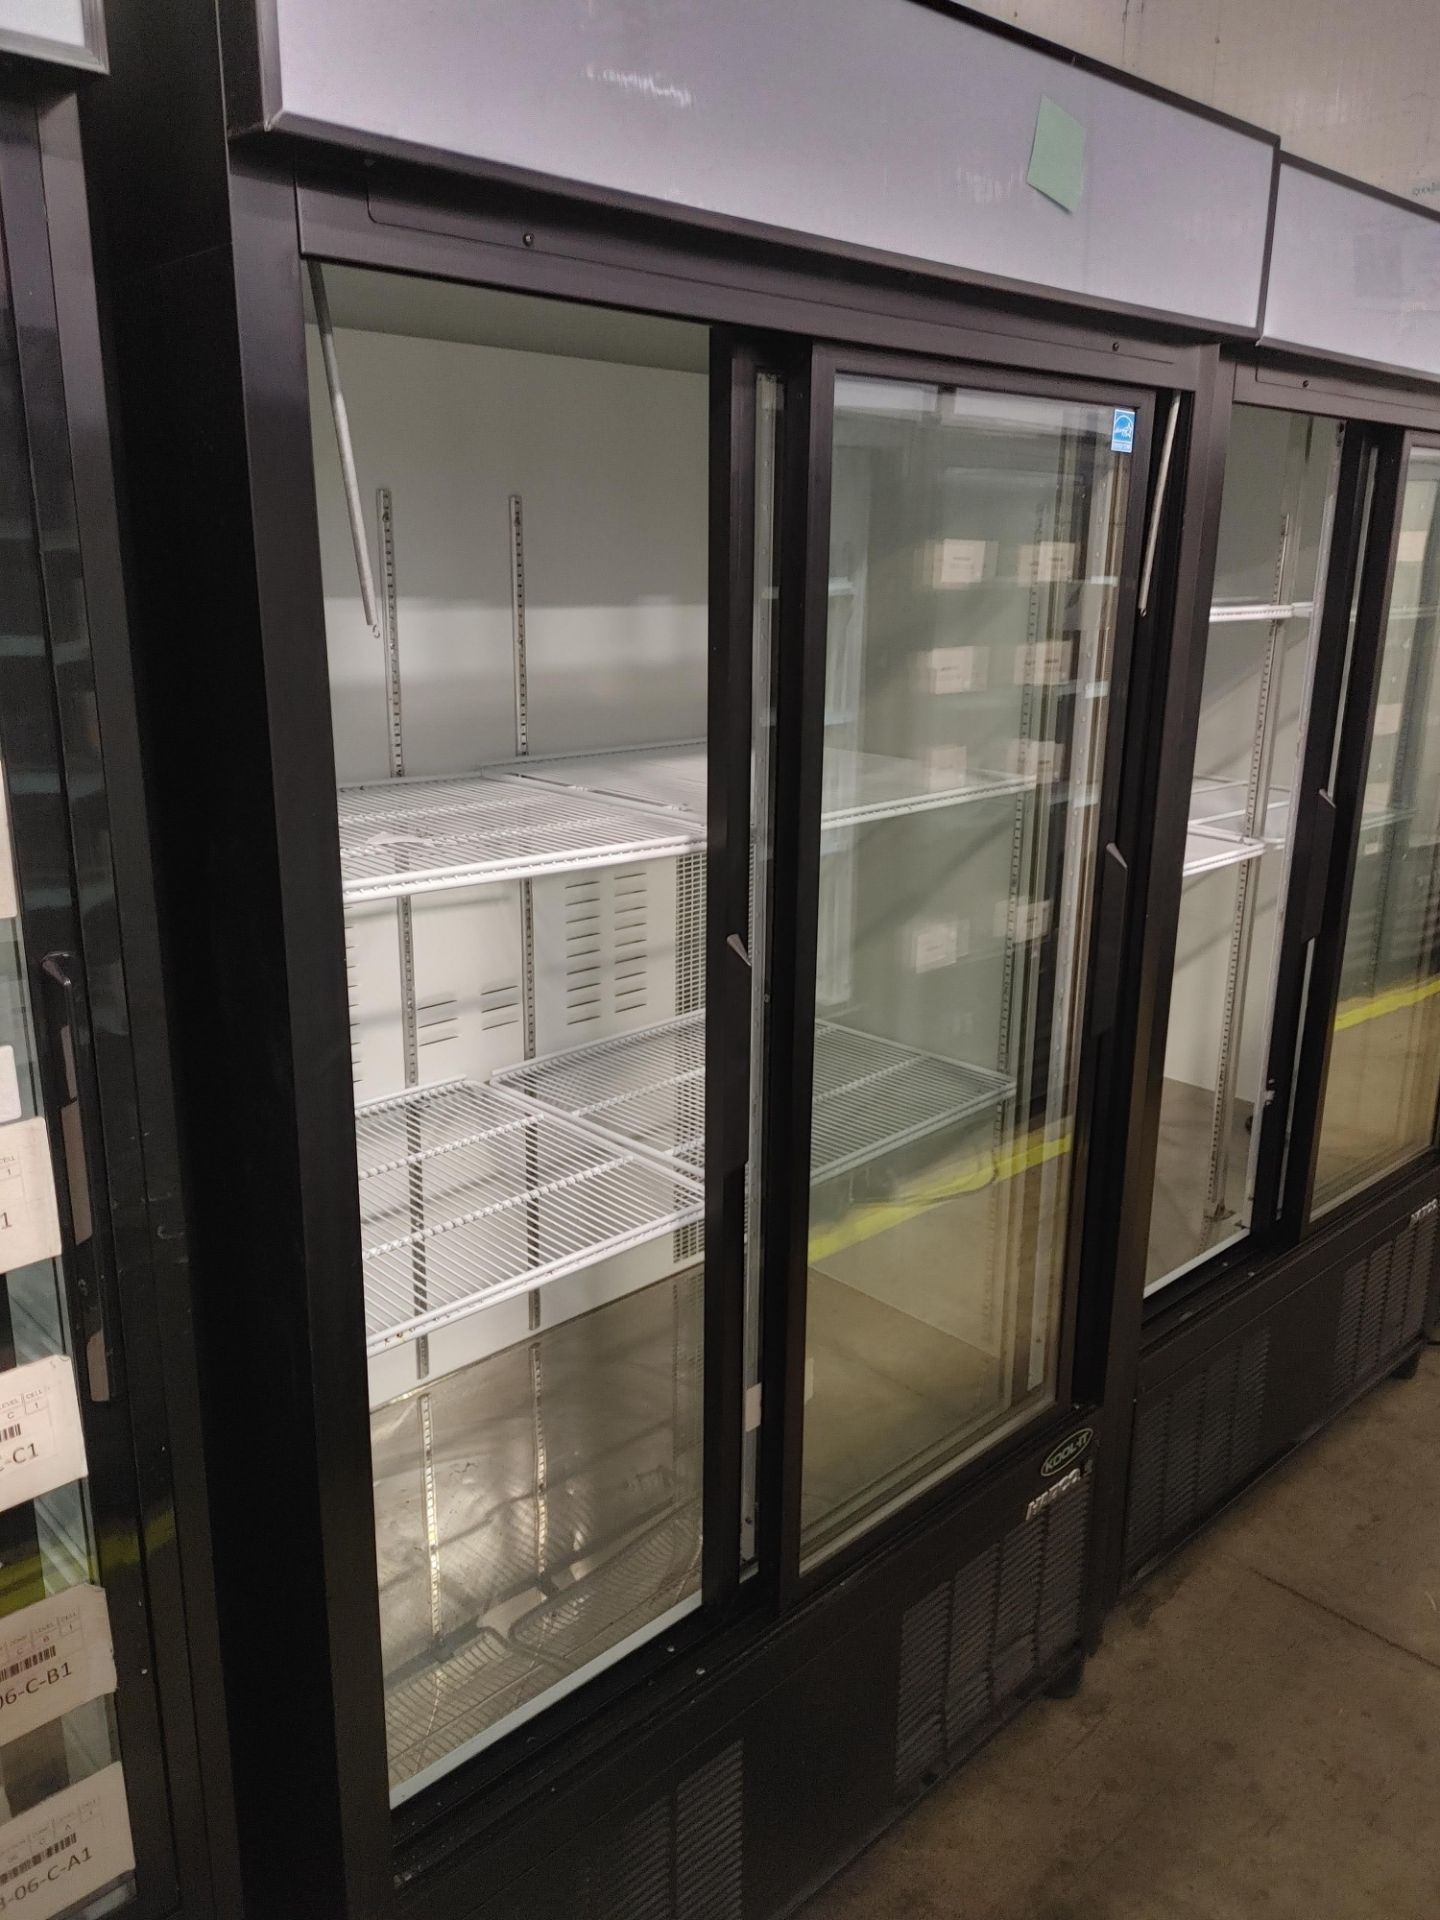 Habco "ESM42HC" 2 Door Glass Front Refrigerator S/N 420662180